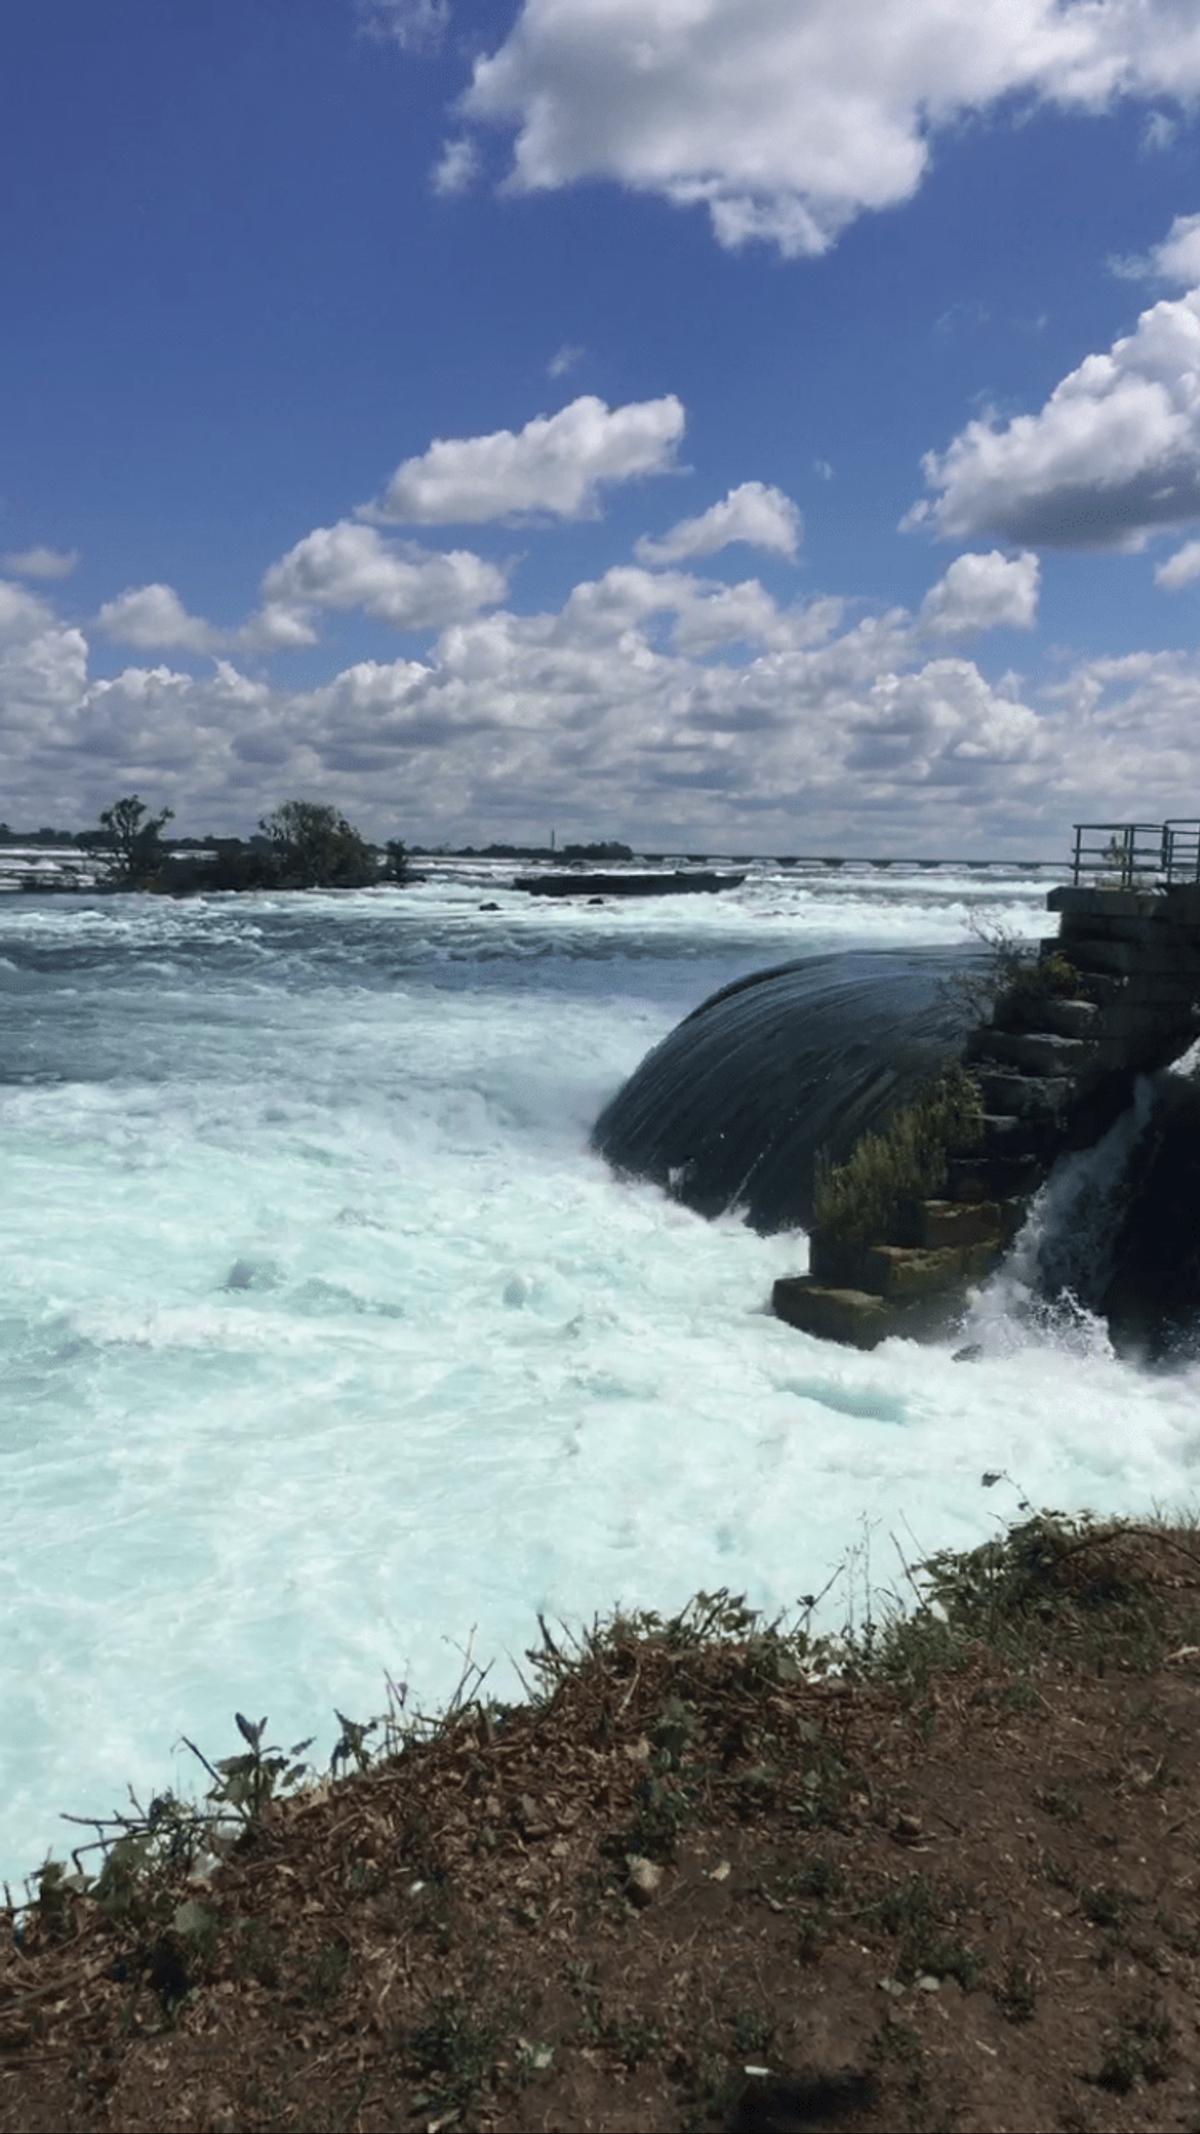 How The Niagara Falls Helped Me Heal